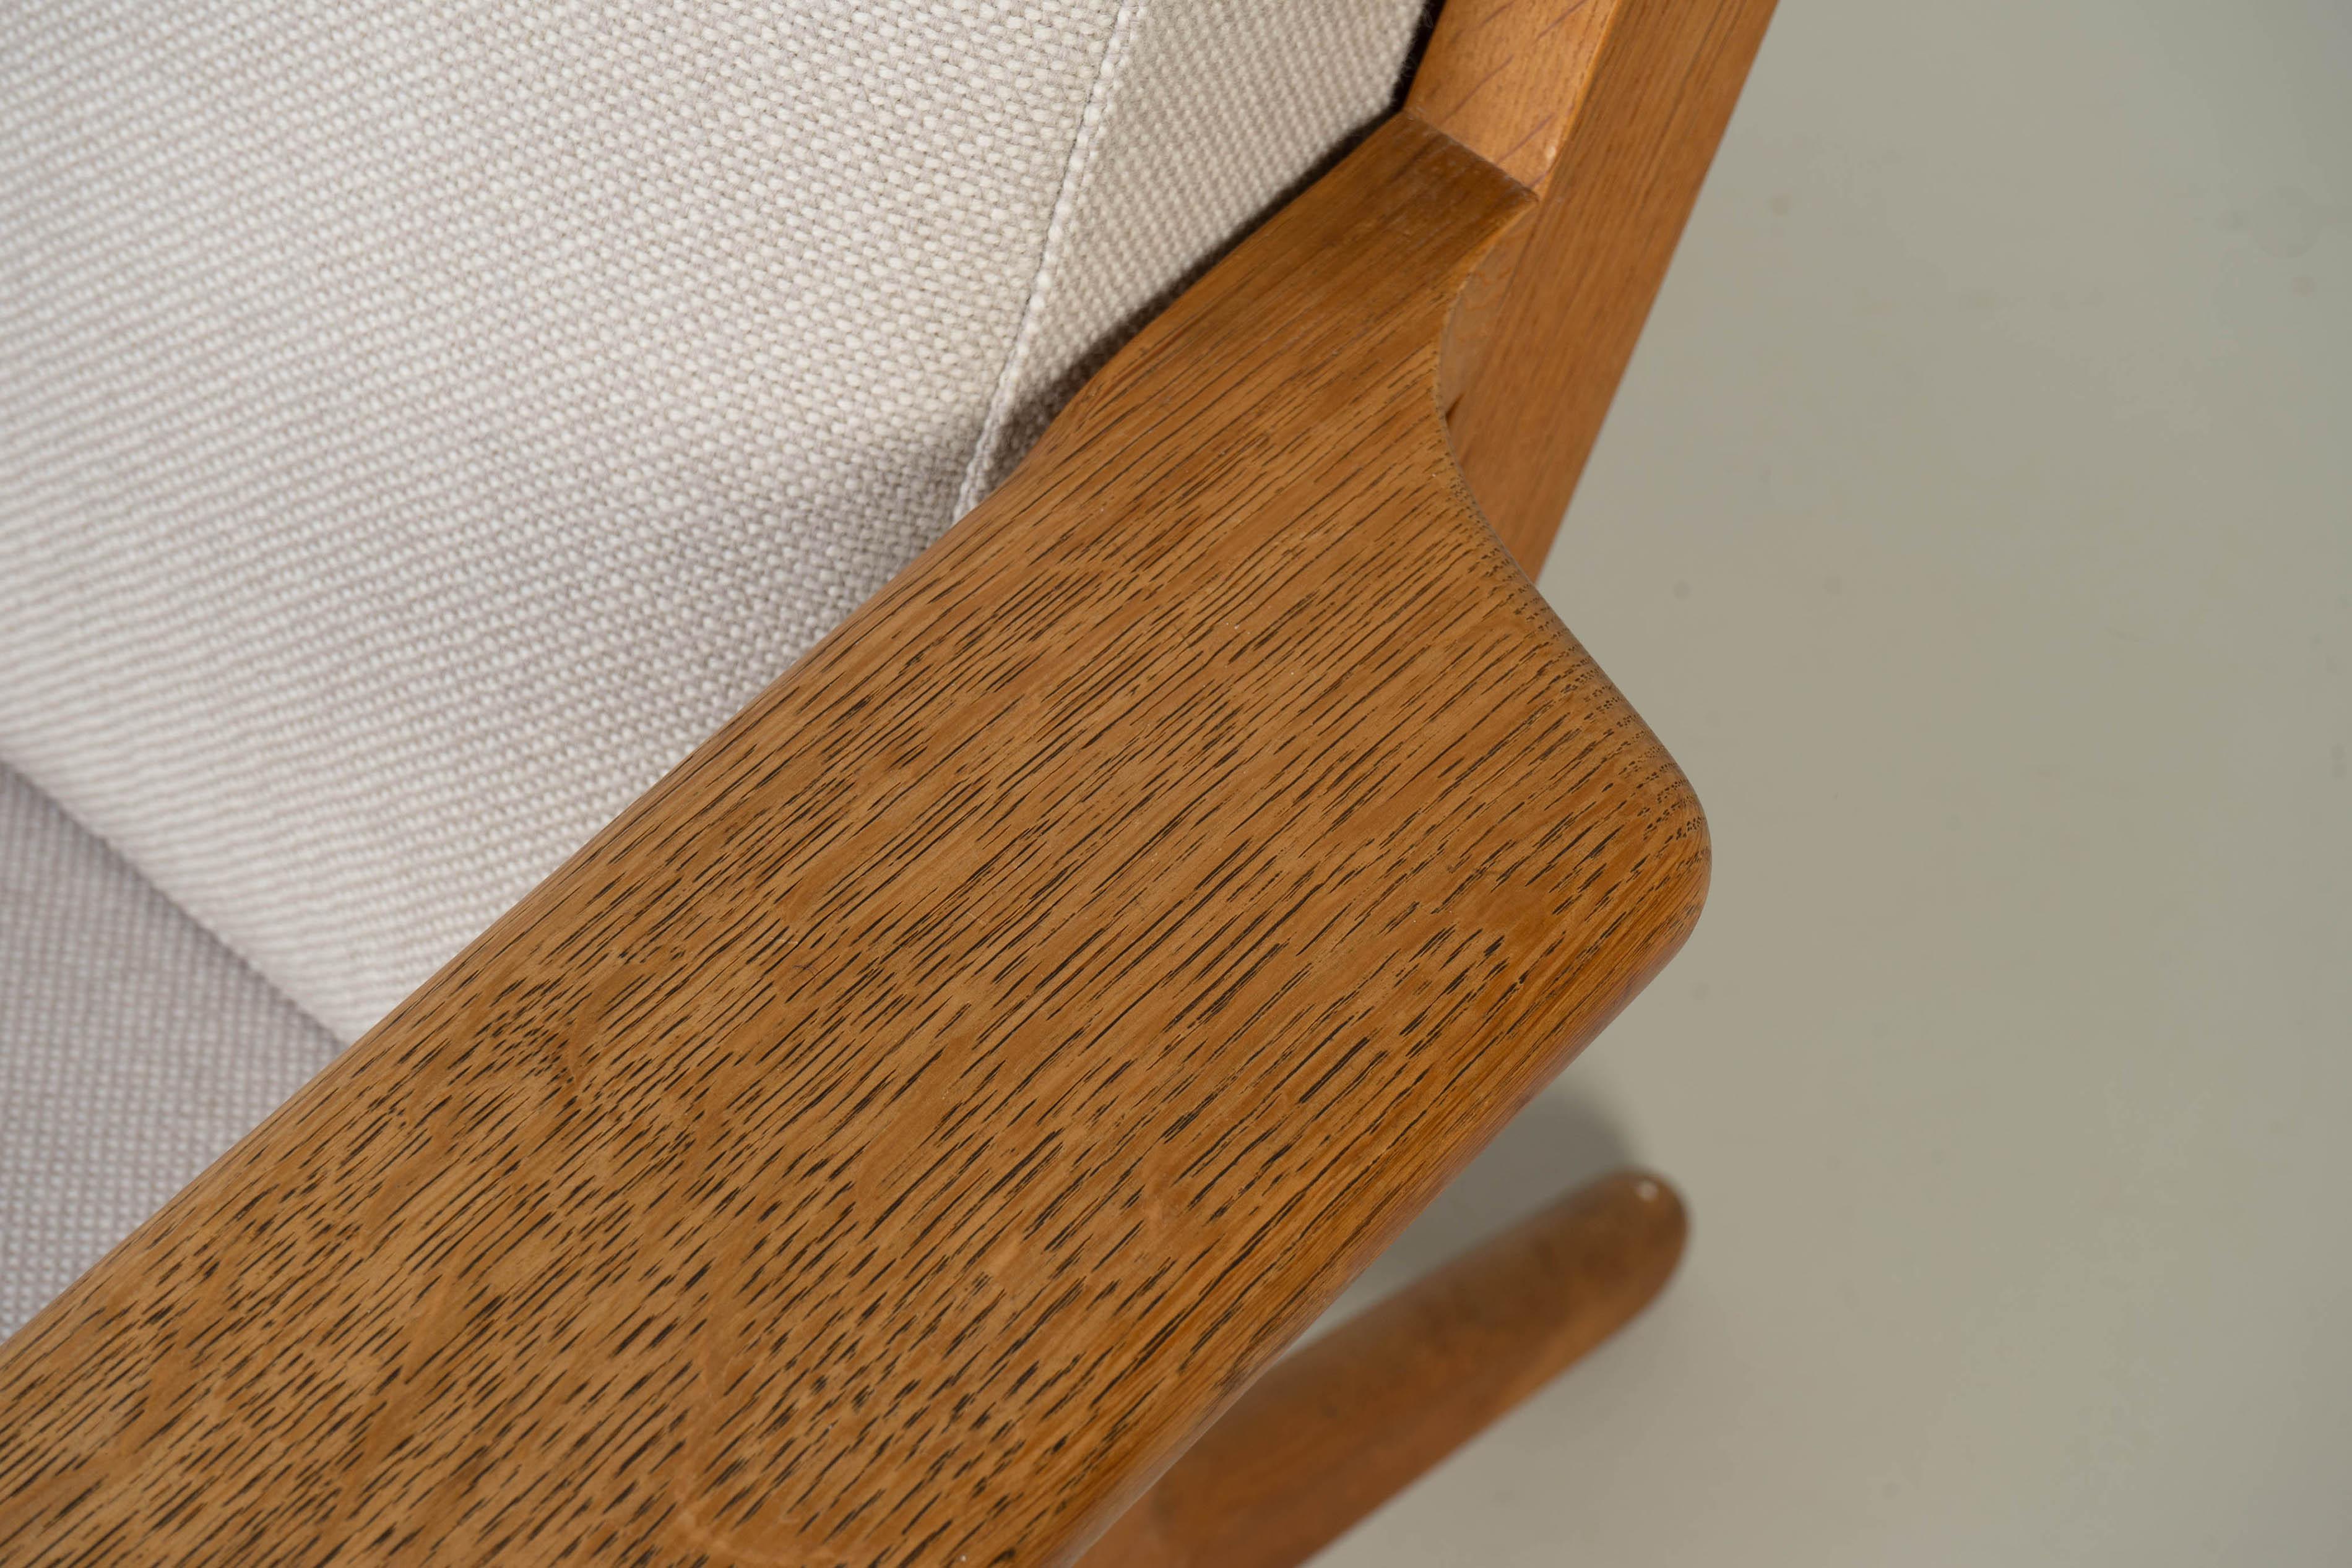 Wool Pair of Easy Chairs by Hans Wegner GETAMA GE 290, Oak Wood Denmark 1960s For Sale